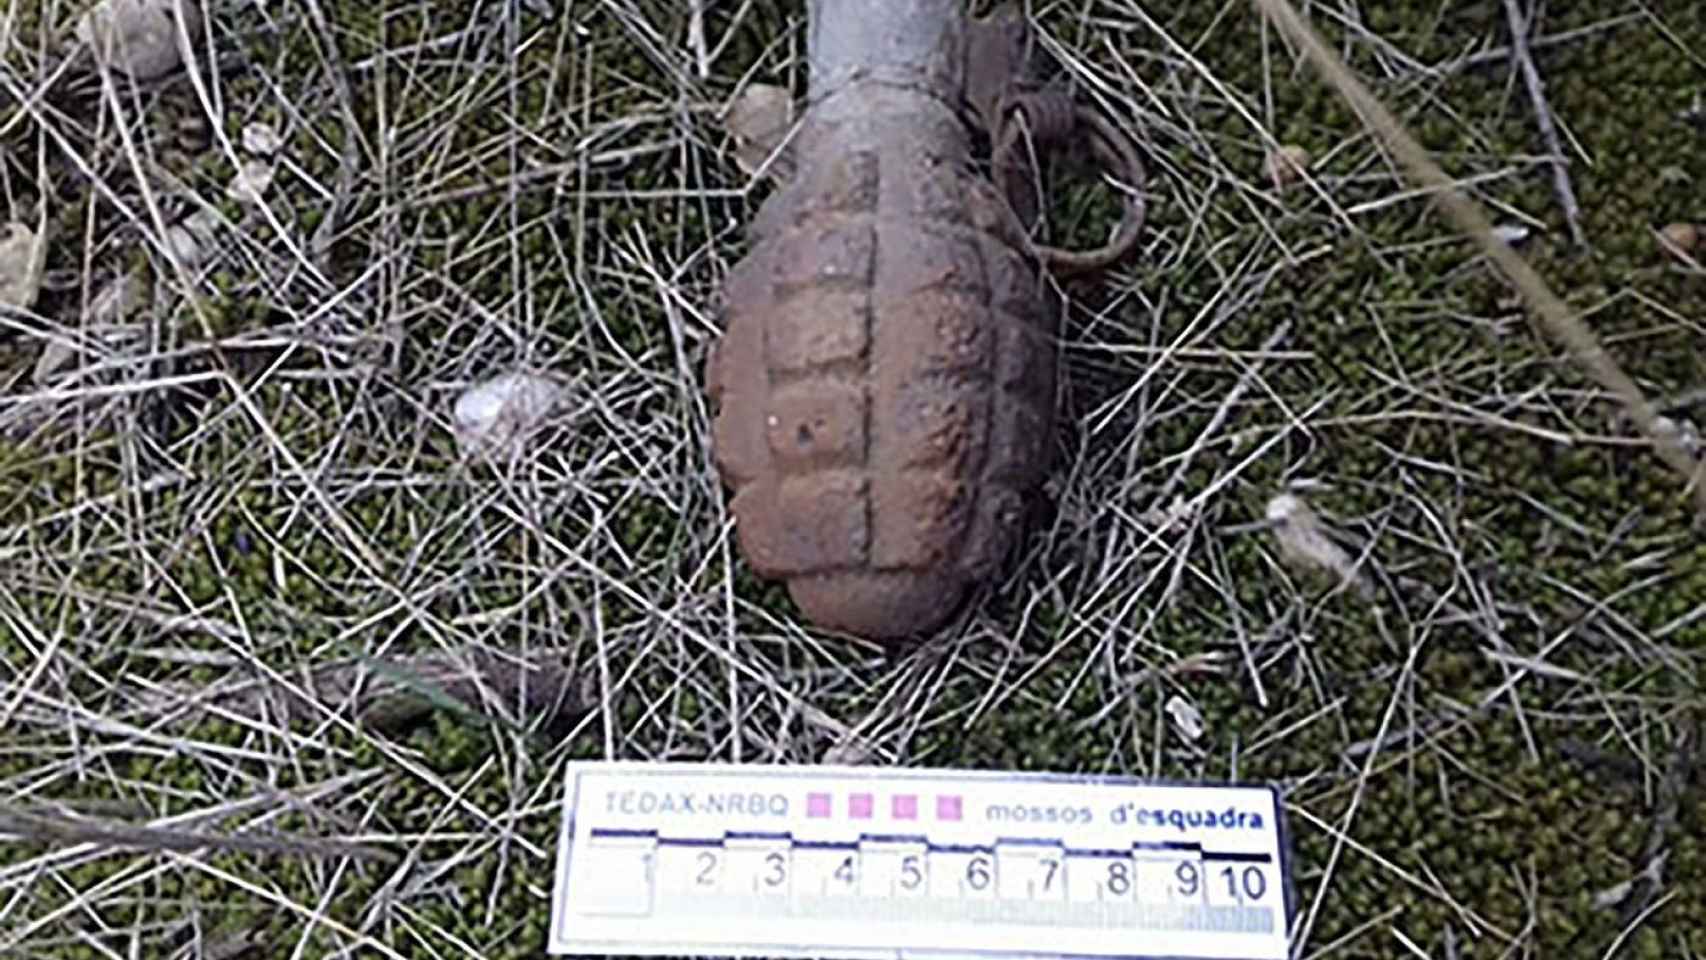 Imagen de una granada de mano encontrada en la montaña por los Mossos / CME